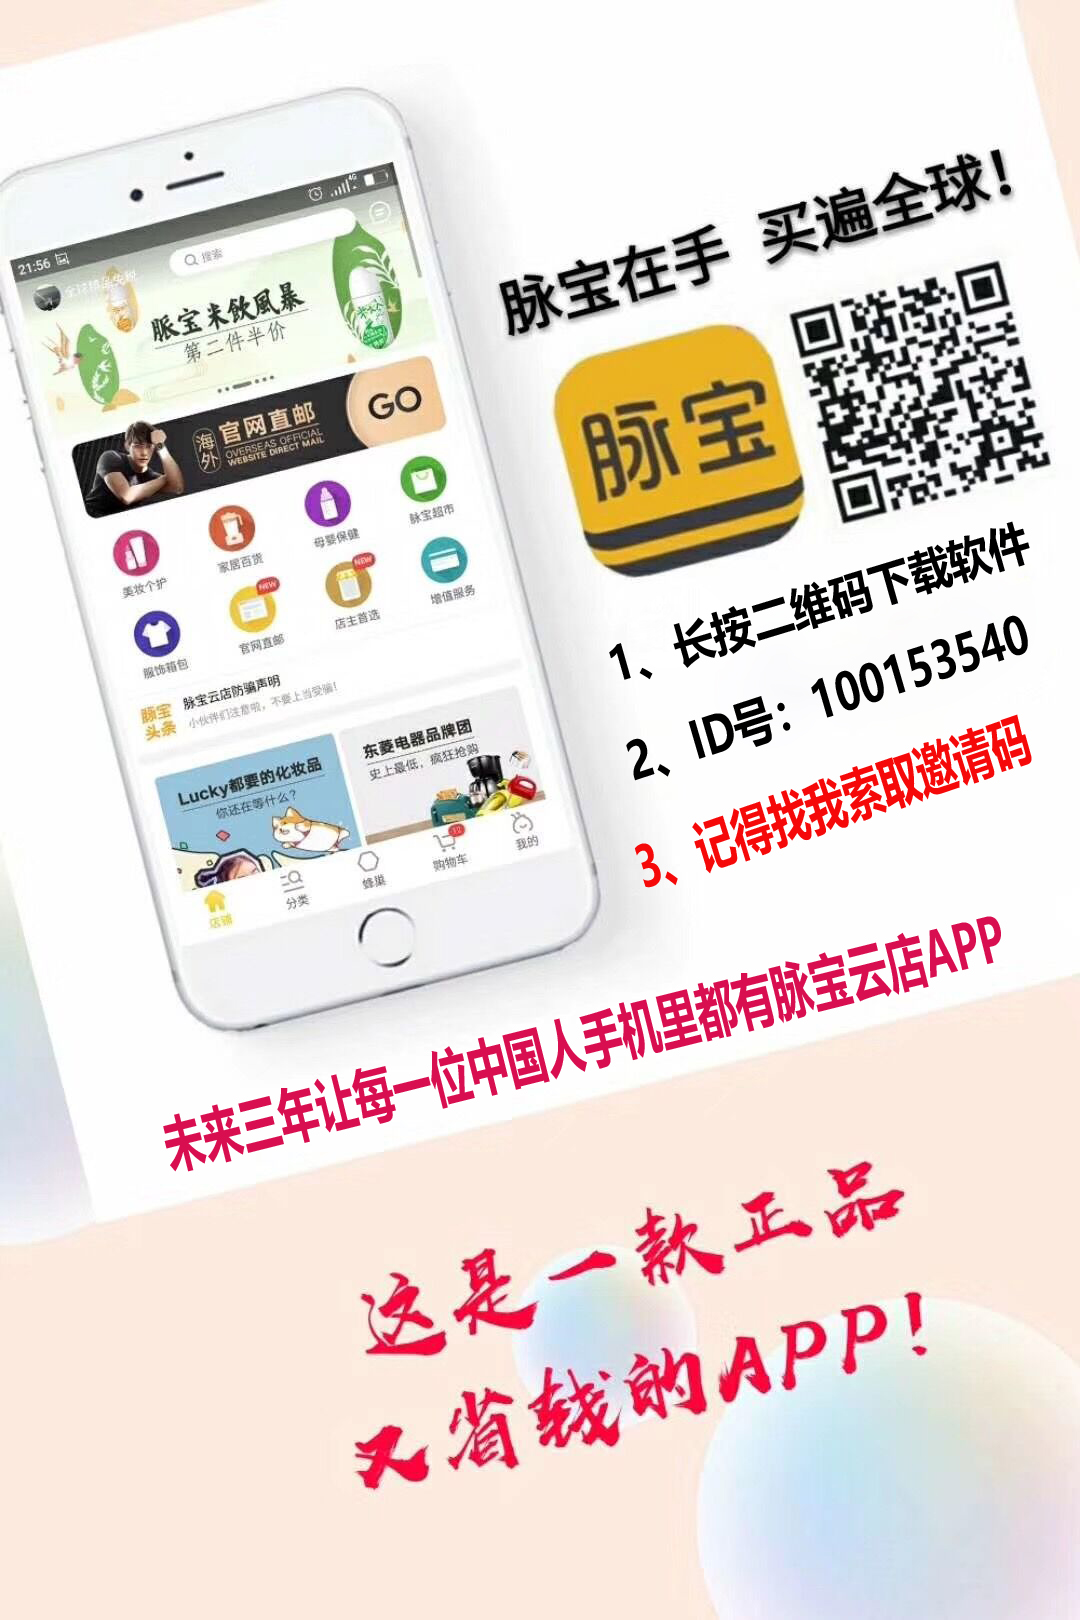 未来三年，让每一位中国人手机里都有脉宝云店APP.jpg